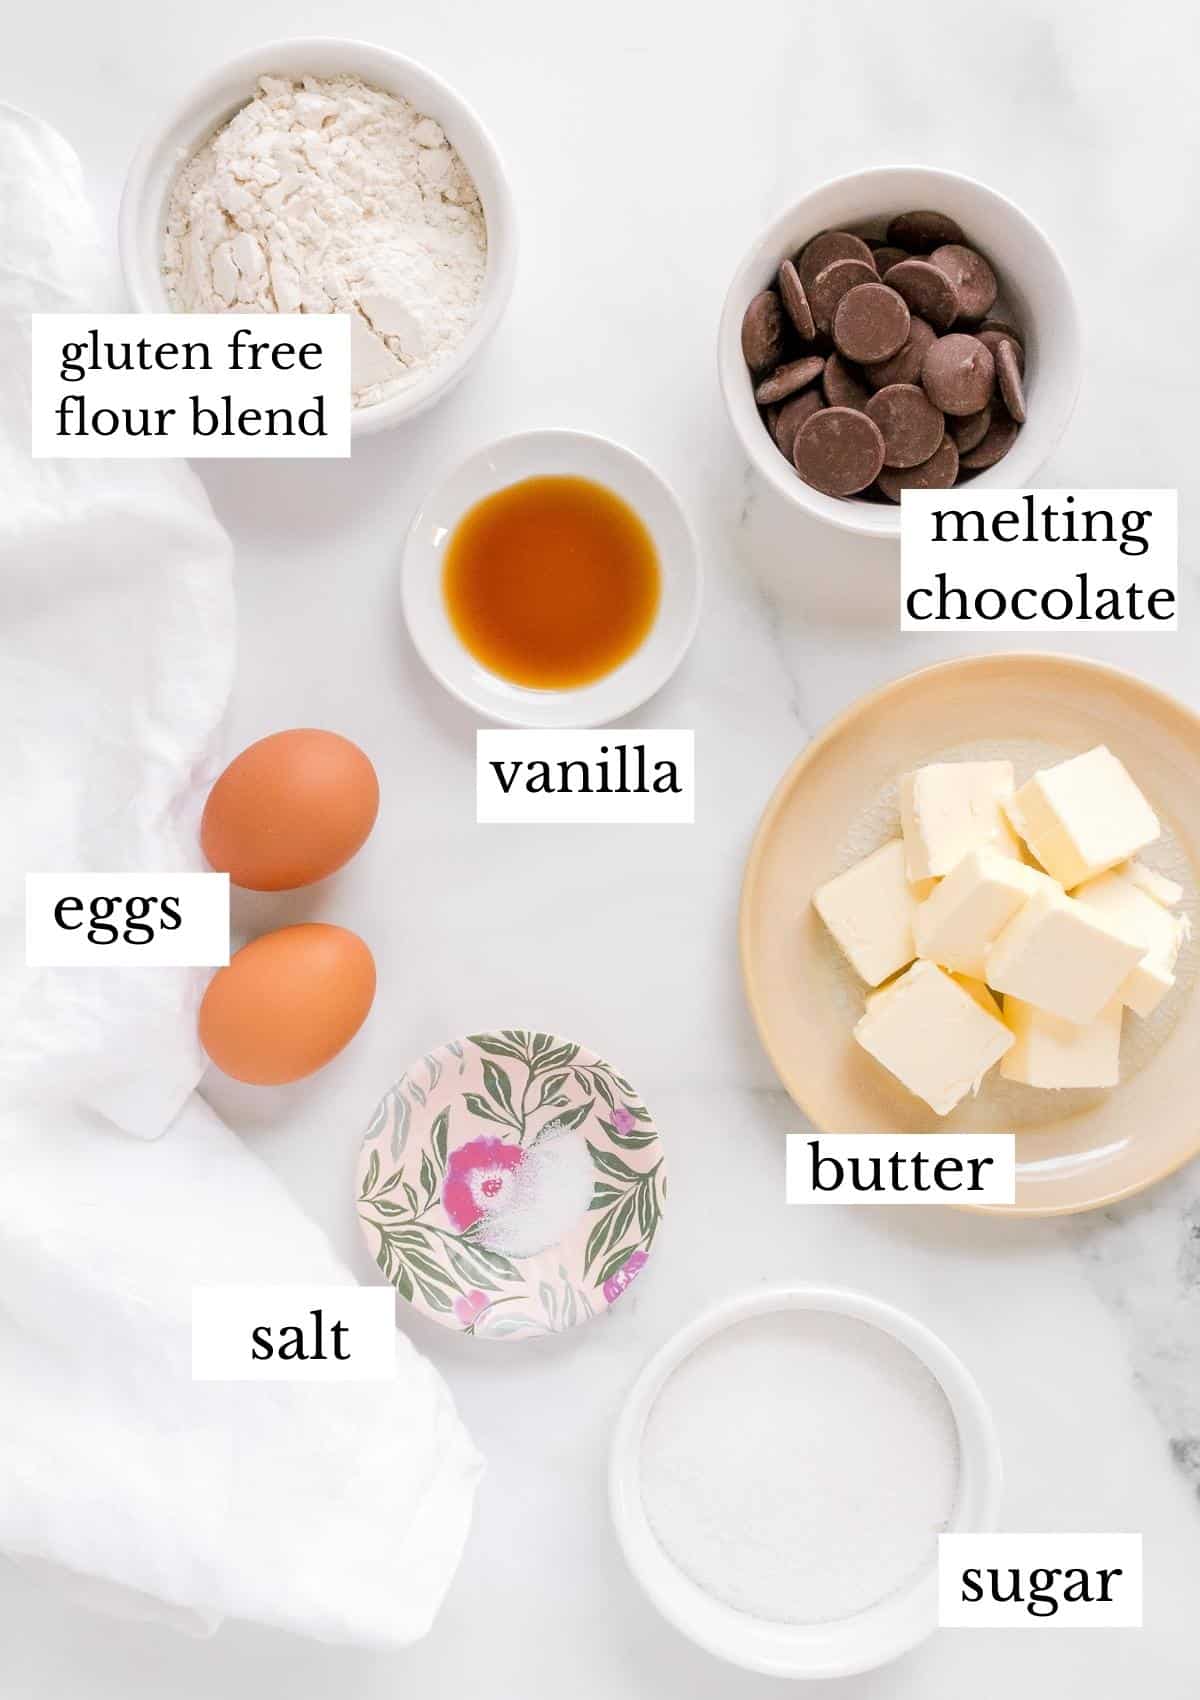 ingredients for gluten free madeleines on white background.